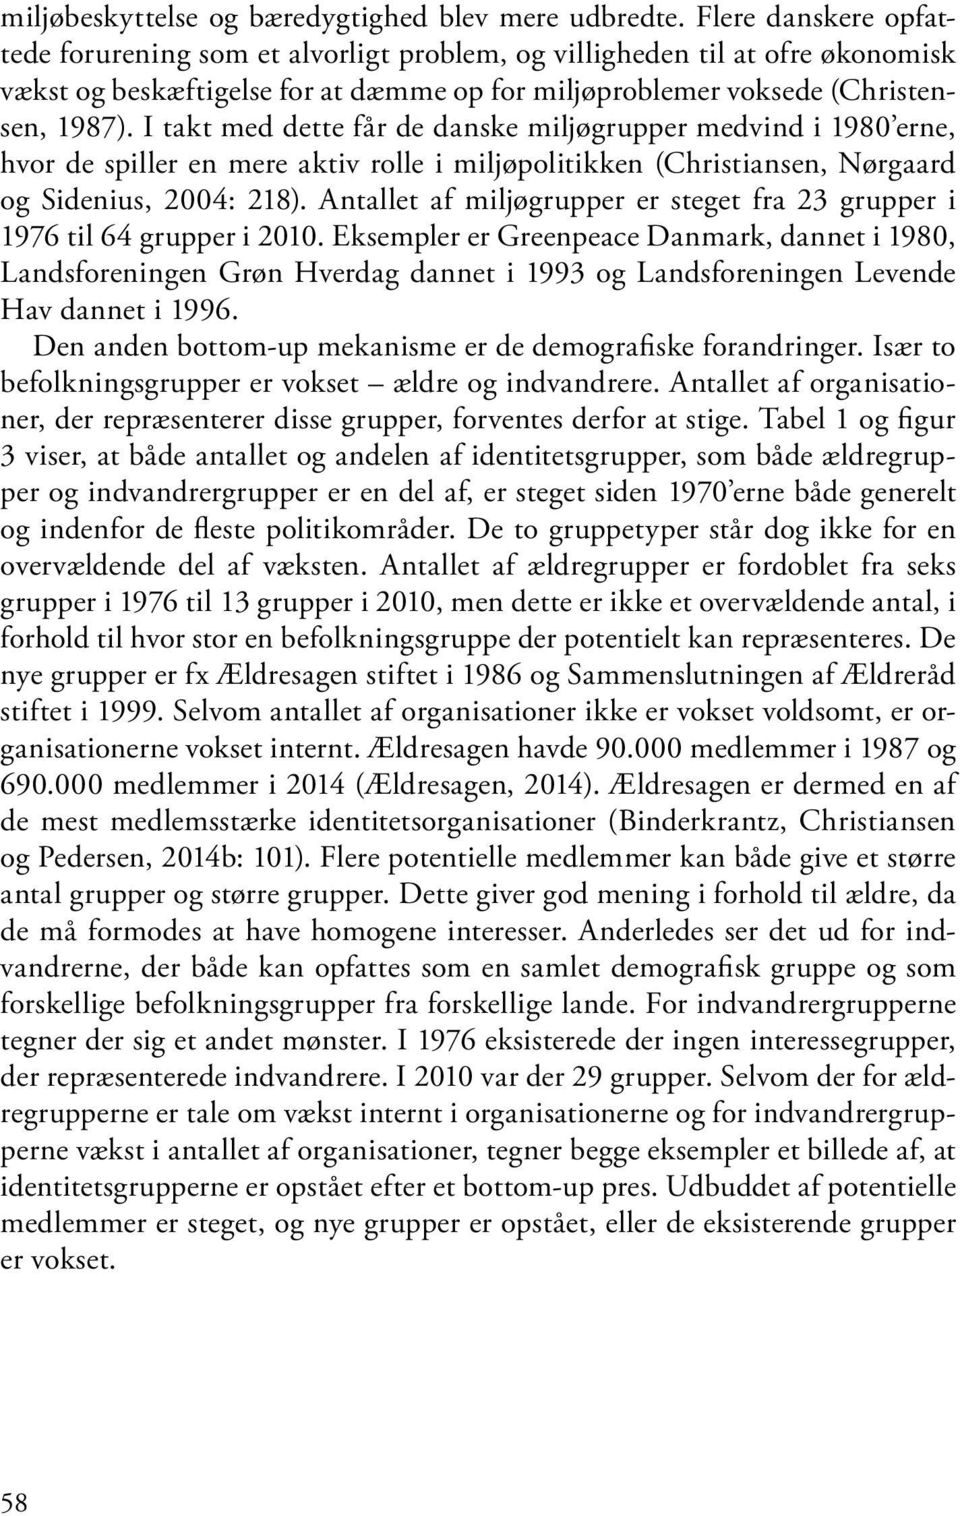 I takt med dette får de danske miljøgrupper medvind i 1980 erne, hvor de spiller en mere aktiv rolle i miljøpolitikken (Christiansen, Nørgaard og Sidenius, 2004: 218).